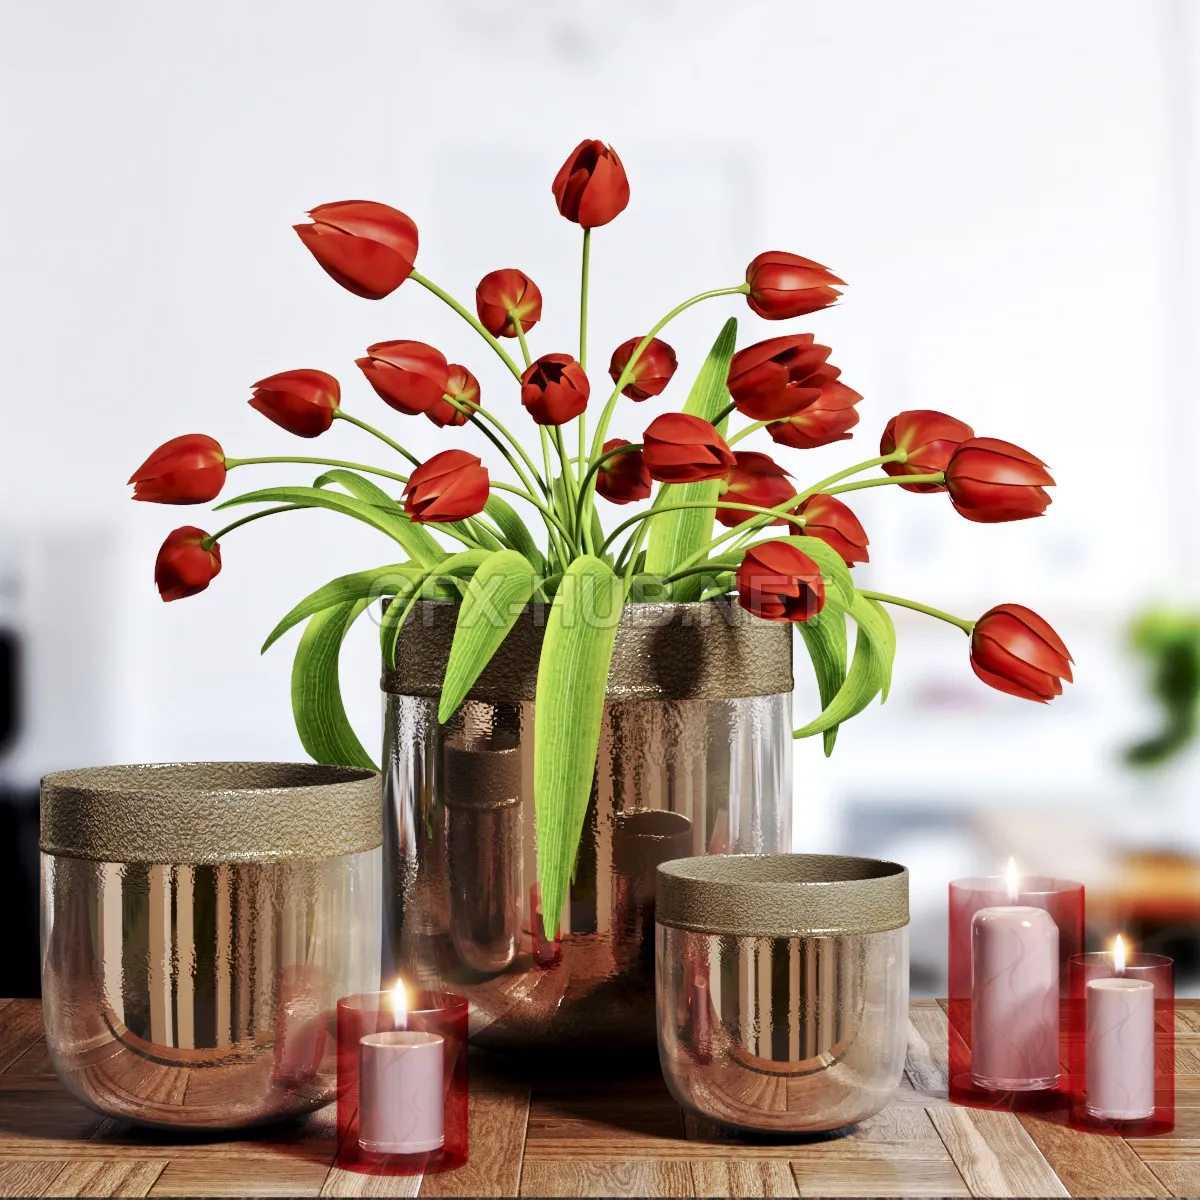 FURNITURE 3D MODELS – Flower Vase and candel